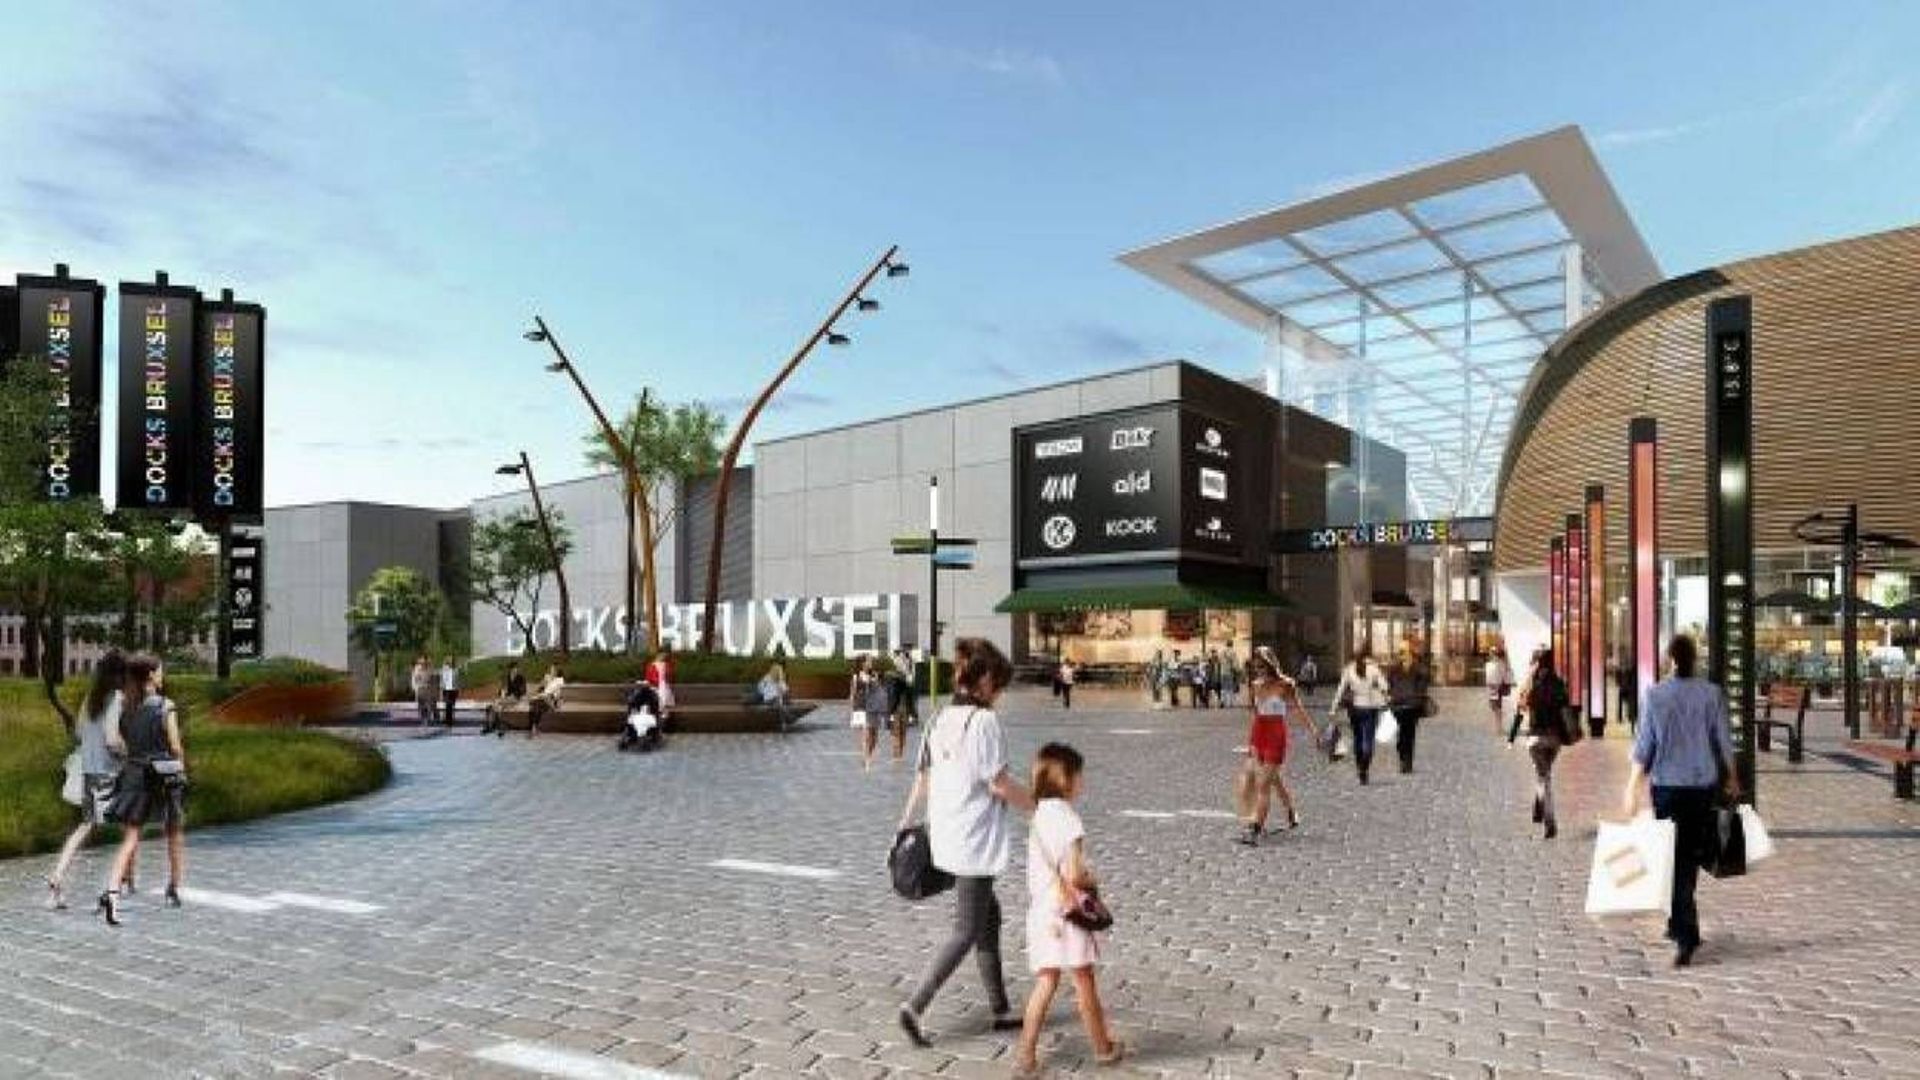 Au final, le futur centre commercial Dockx Bruxsel ne créera "que" 500 ou 600 emplois...